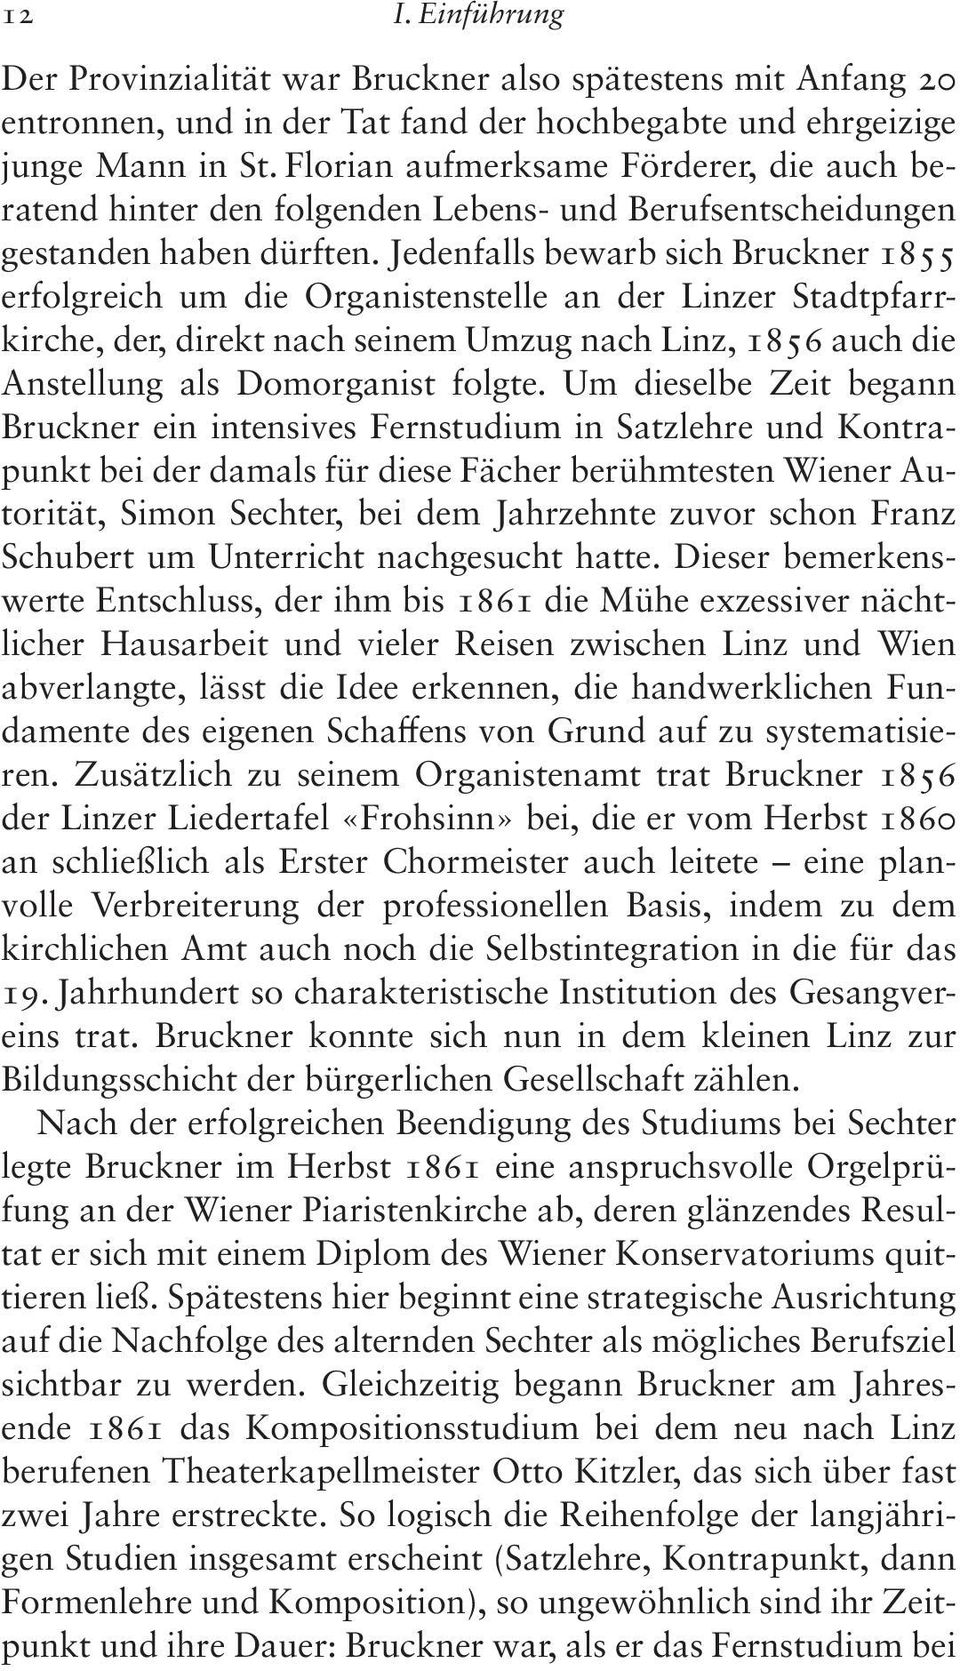 Jedenfalls bewarb sich Bruckner 1855 erfolgreich um die Organistenstelle an der Linzer Stadtpfarrkirche, der, direkt nach seinem Umzug nach Linz, 1856 auch die Anstellung als Domorganist folgte.